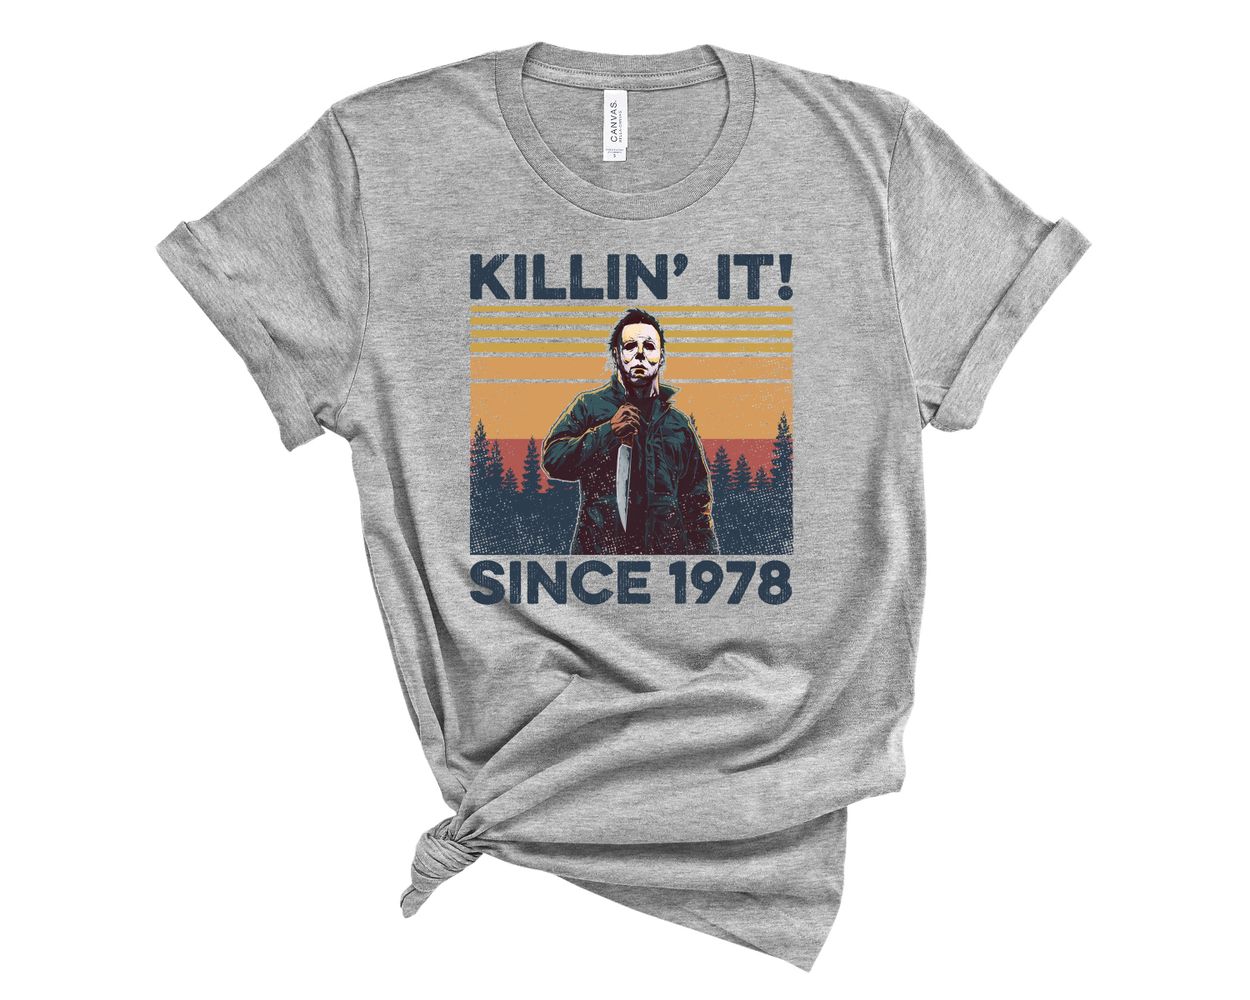 Matando desde 1978 - camiseta de Michael Myers